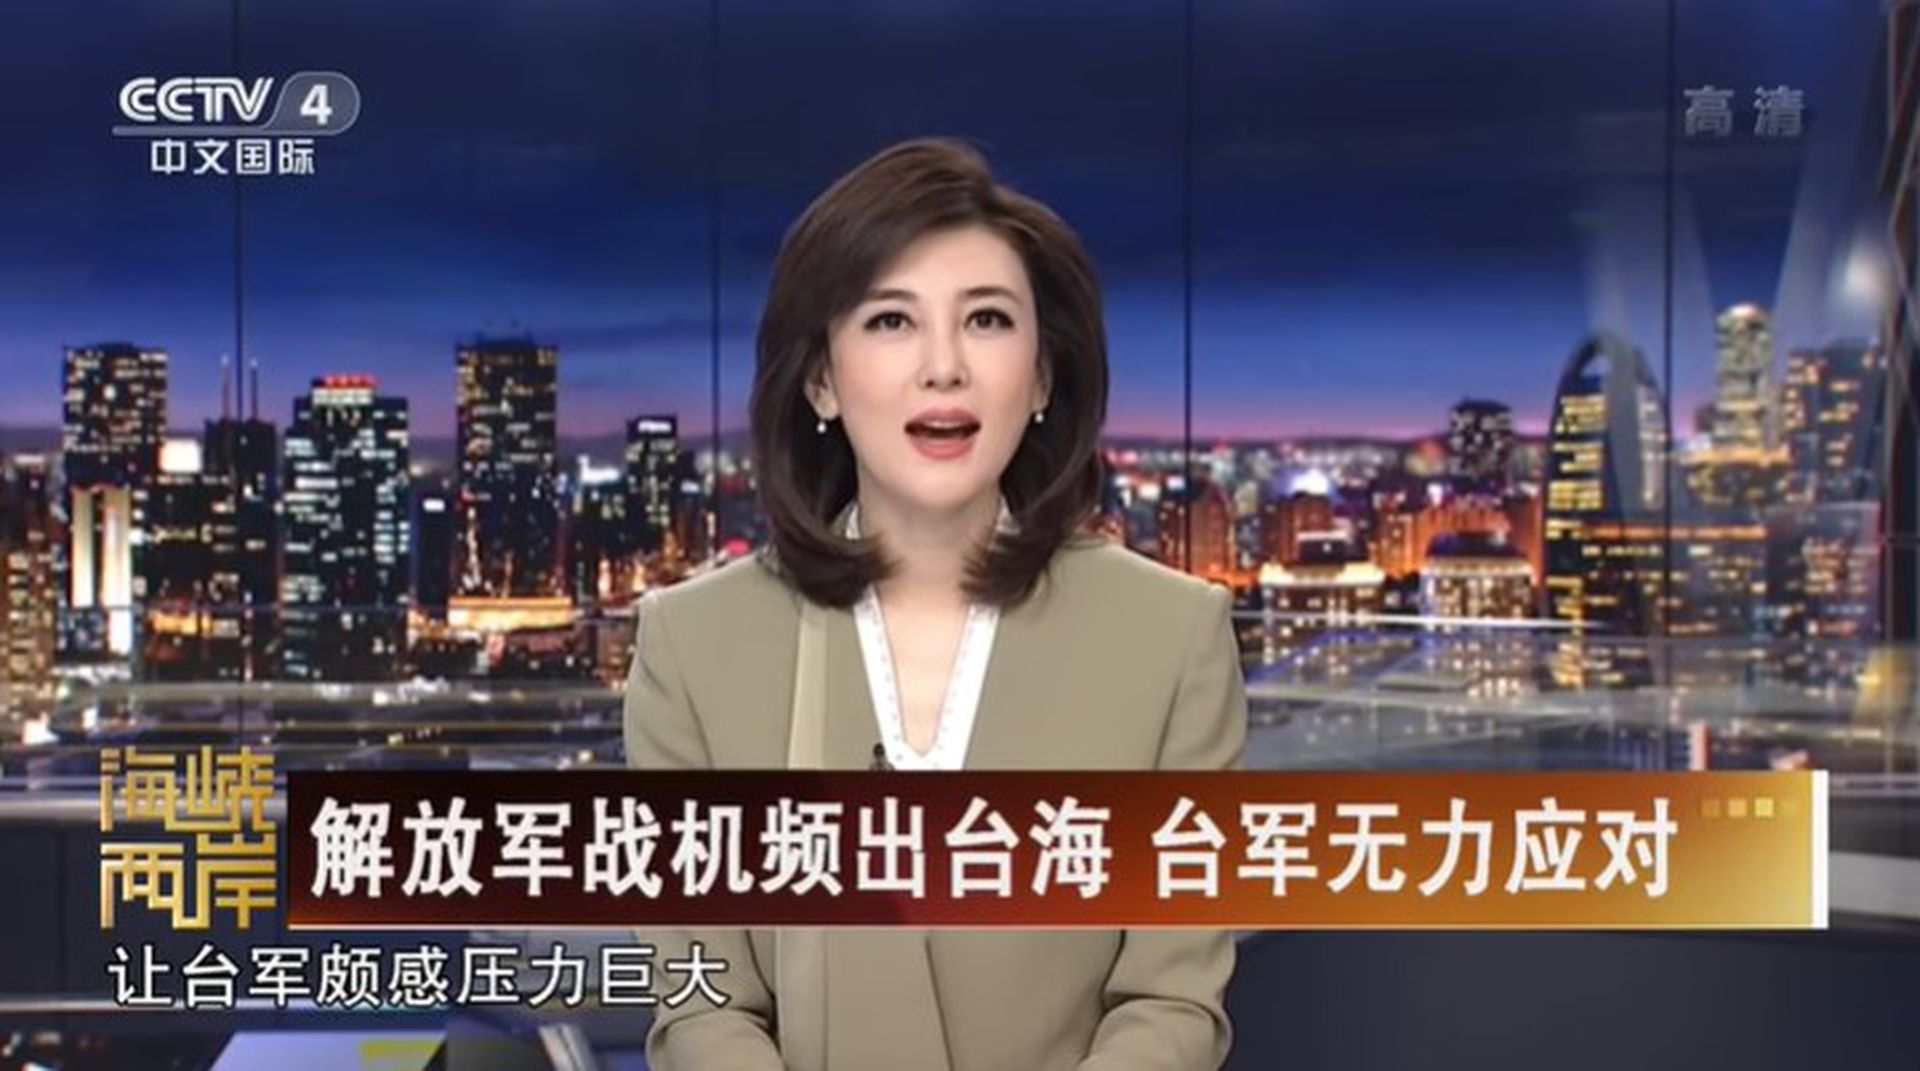 中国央视节目邀请两岸学者共论“解放军战机频出台海，台军无力应对”的敏感话题。（YouTube@CCTV中文国际）